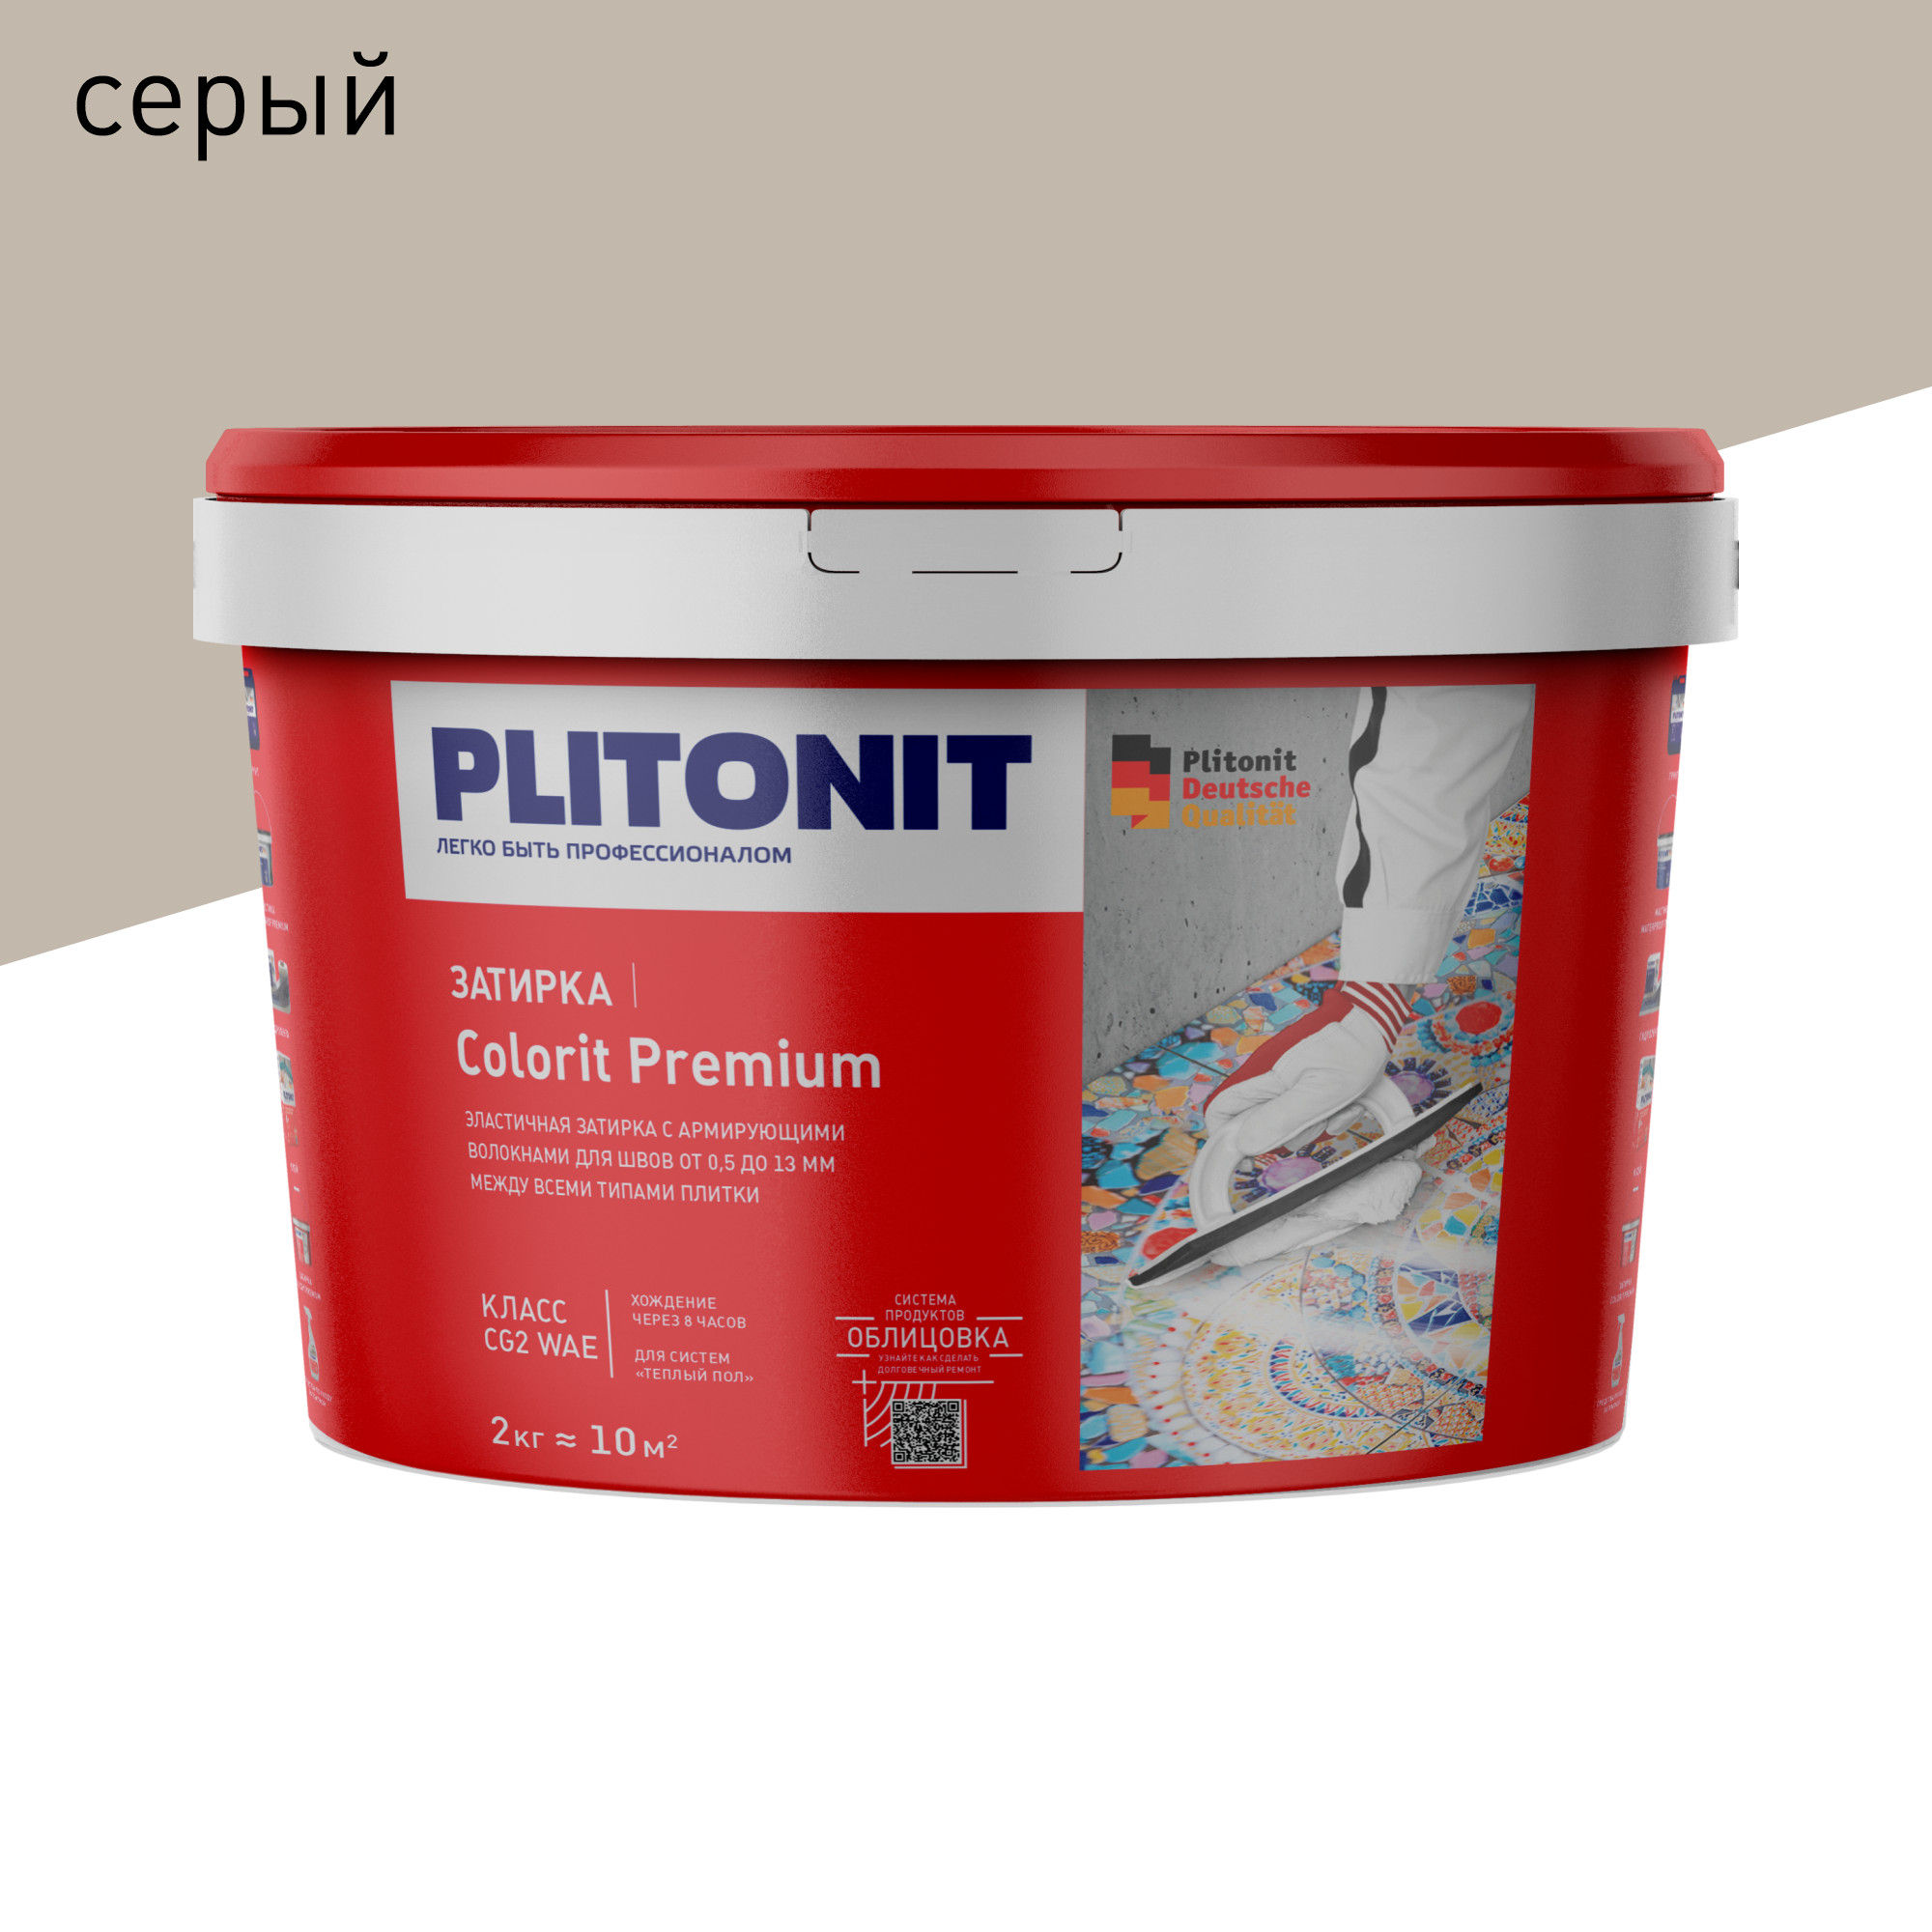 Затирка PLITONIT Colorit Premium серая 2 кг затирка эпоксидная plitonit colorit easyfill бежевая 2 кг